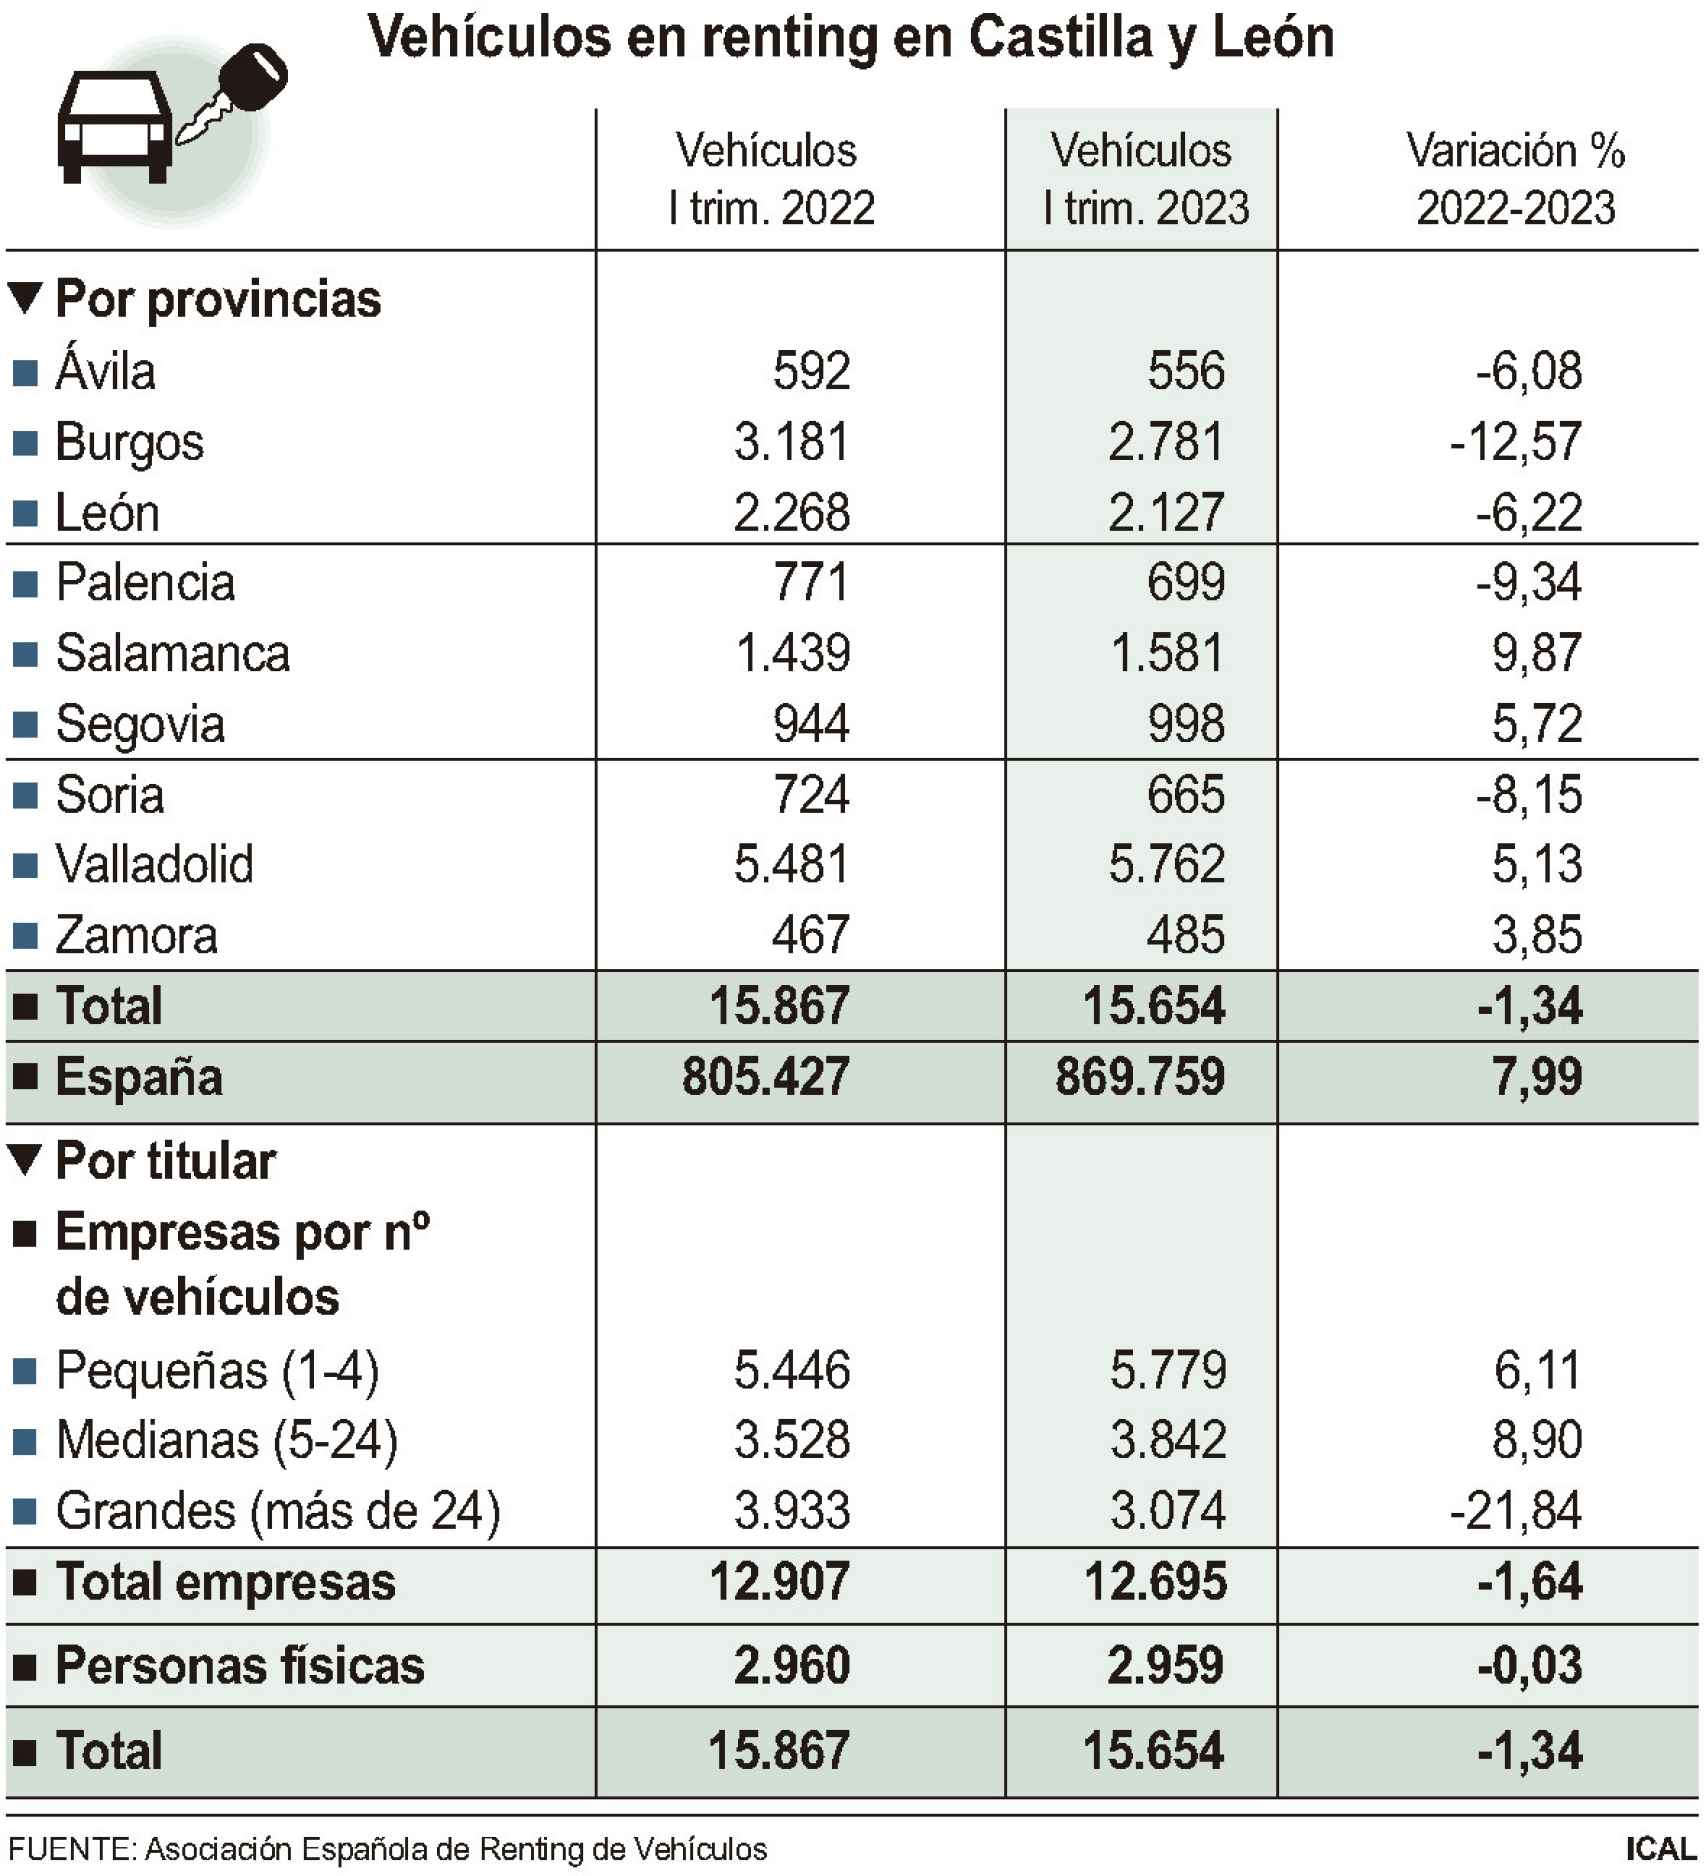 Vehículos en renting en Castilla y León